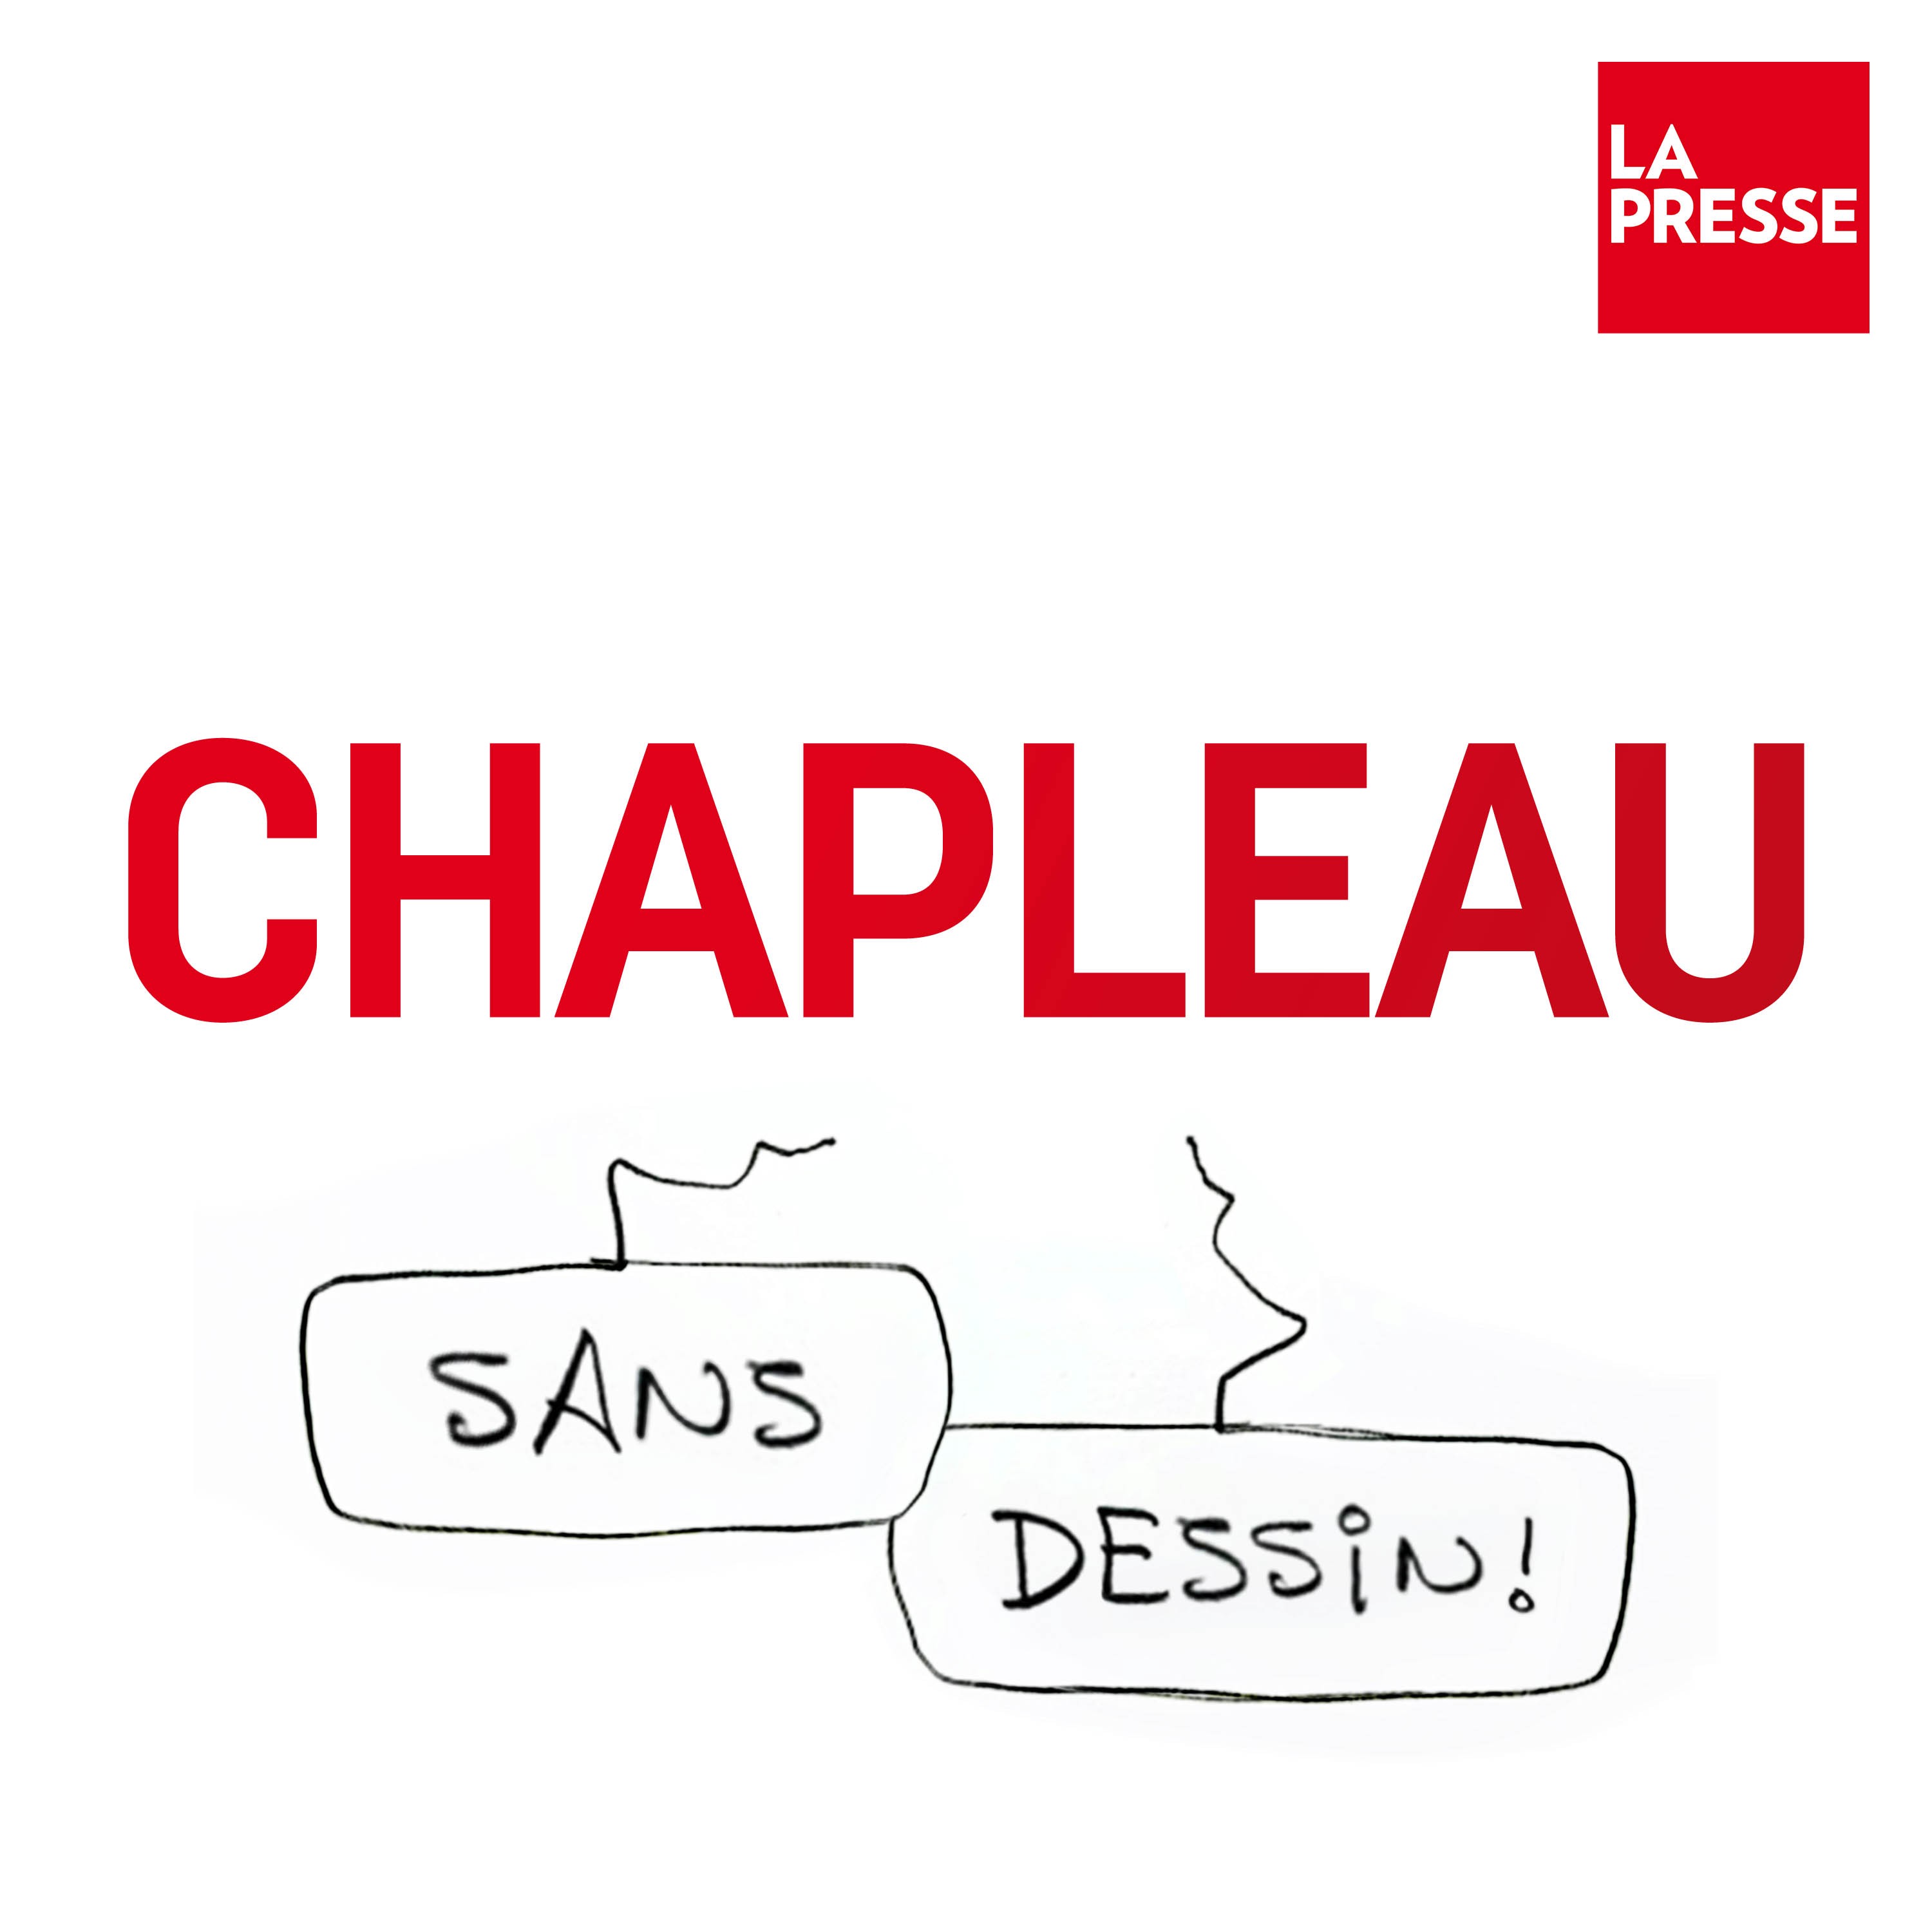 Chapleau - Sans dessin